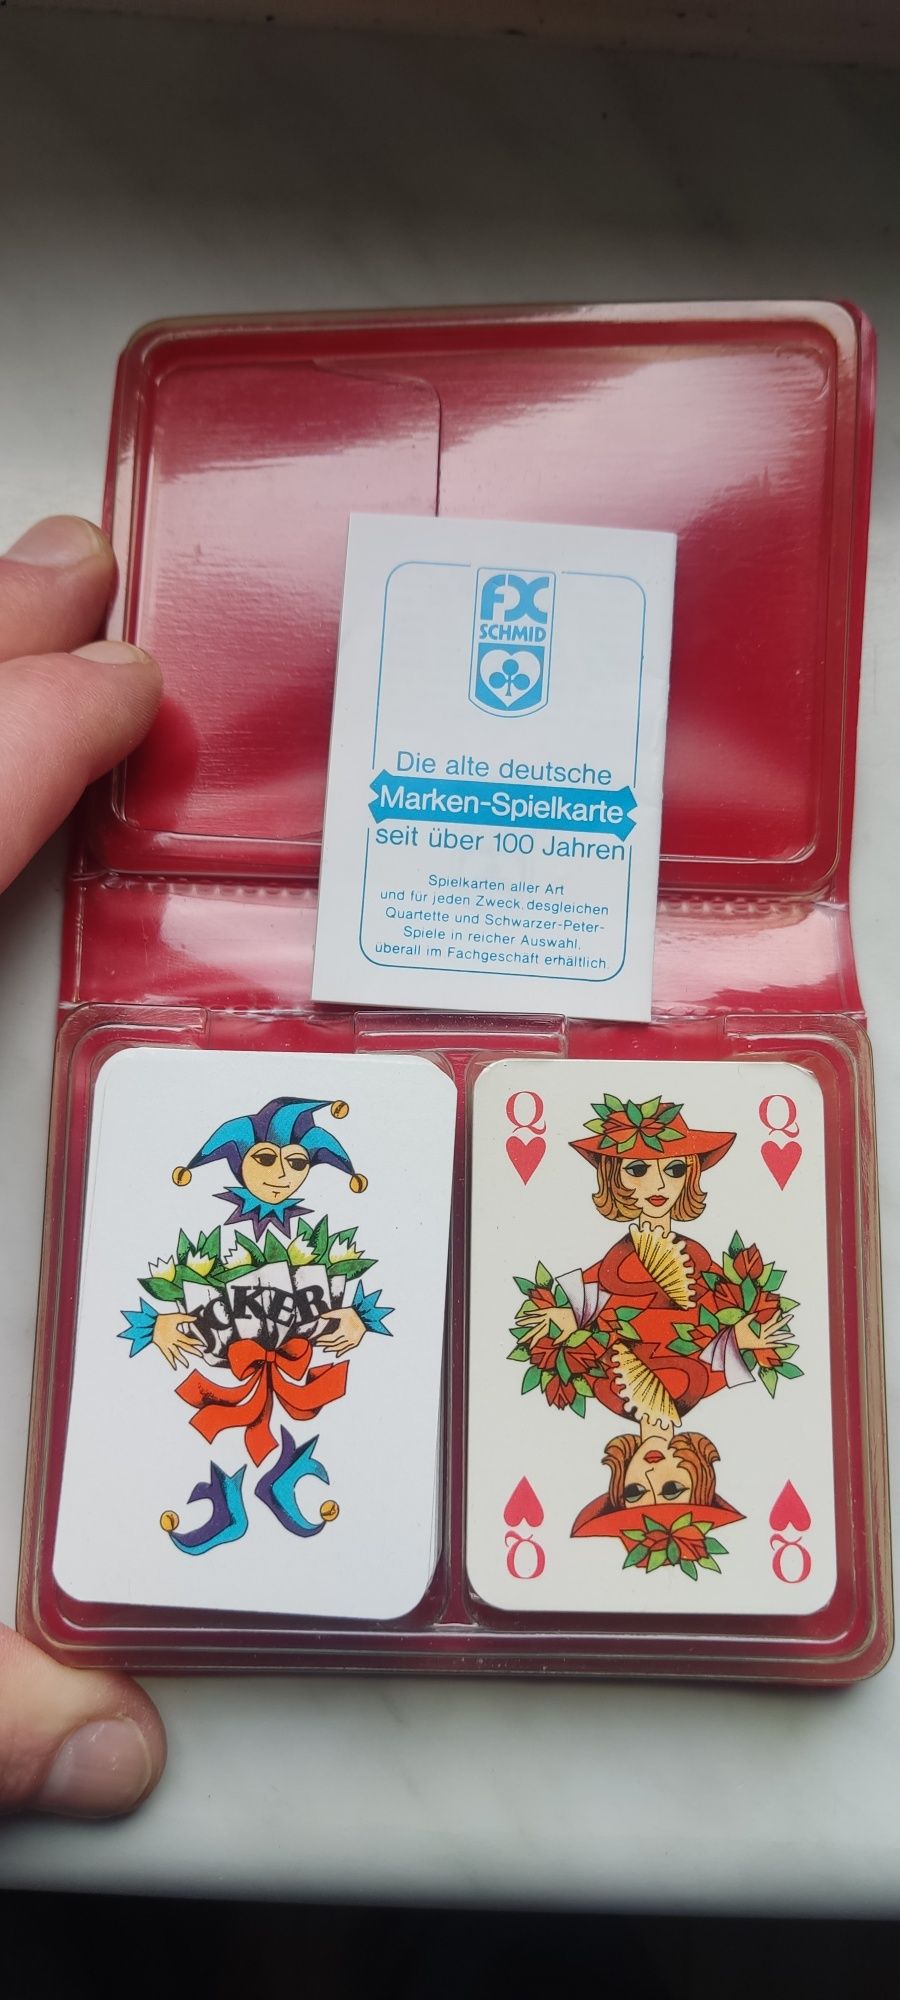 Stare 4 zestawy po 2 talie kart do gry w pasjansa itp.